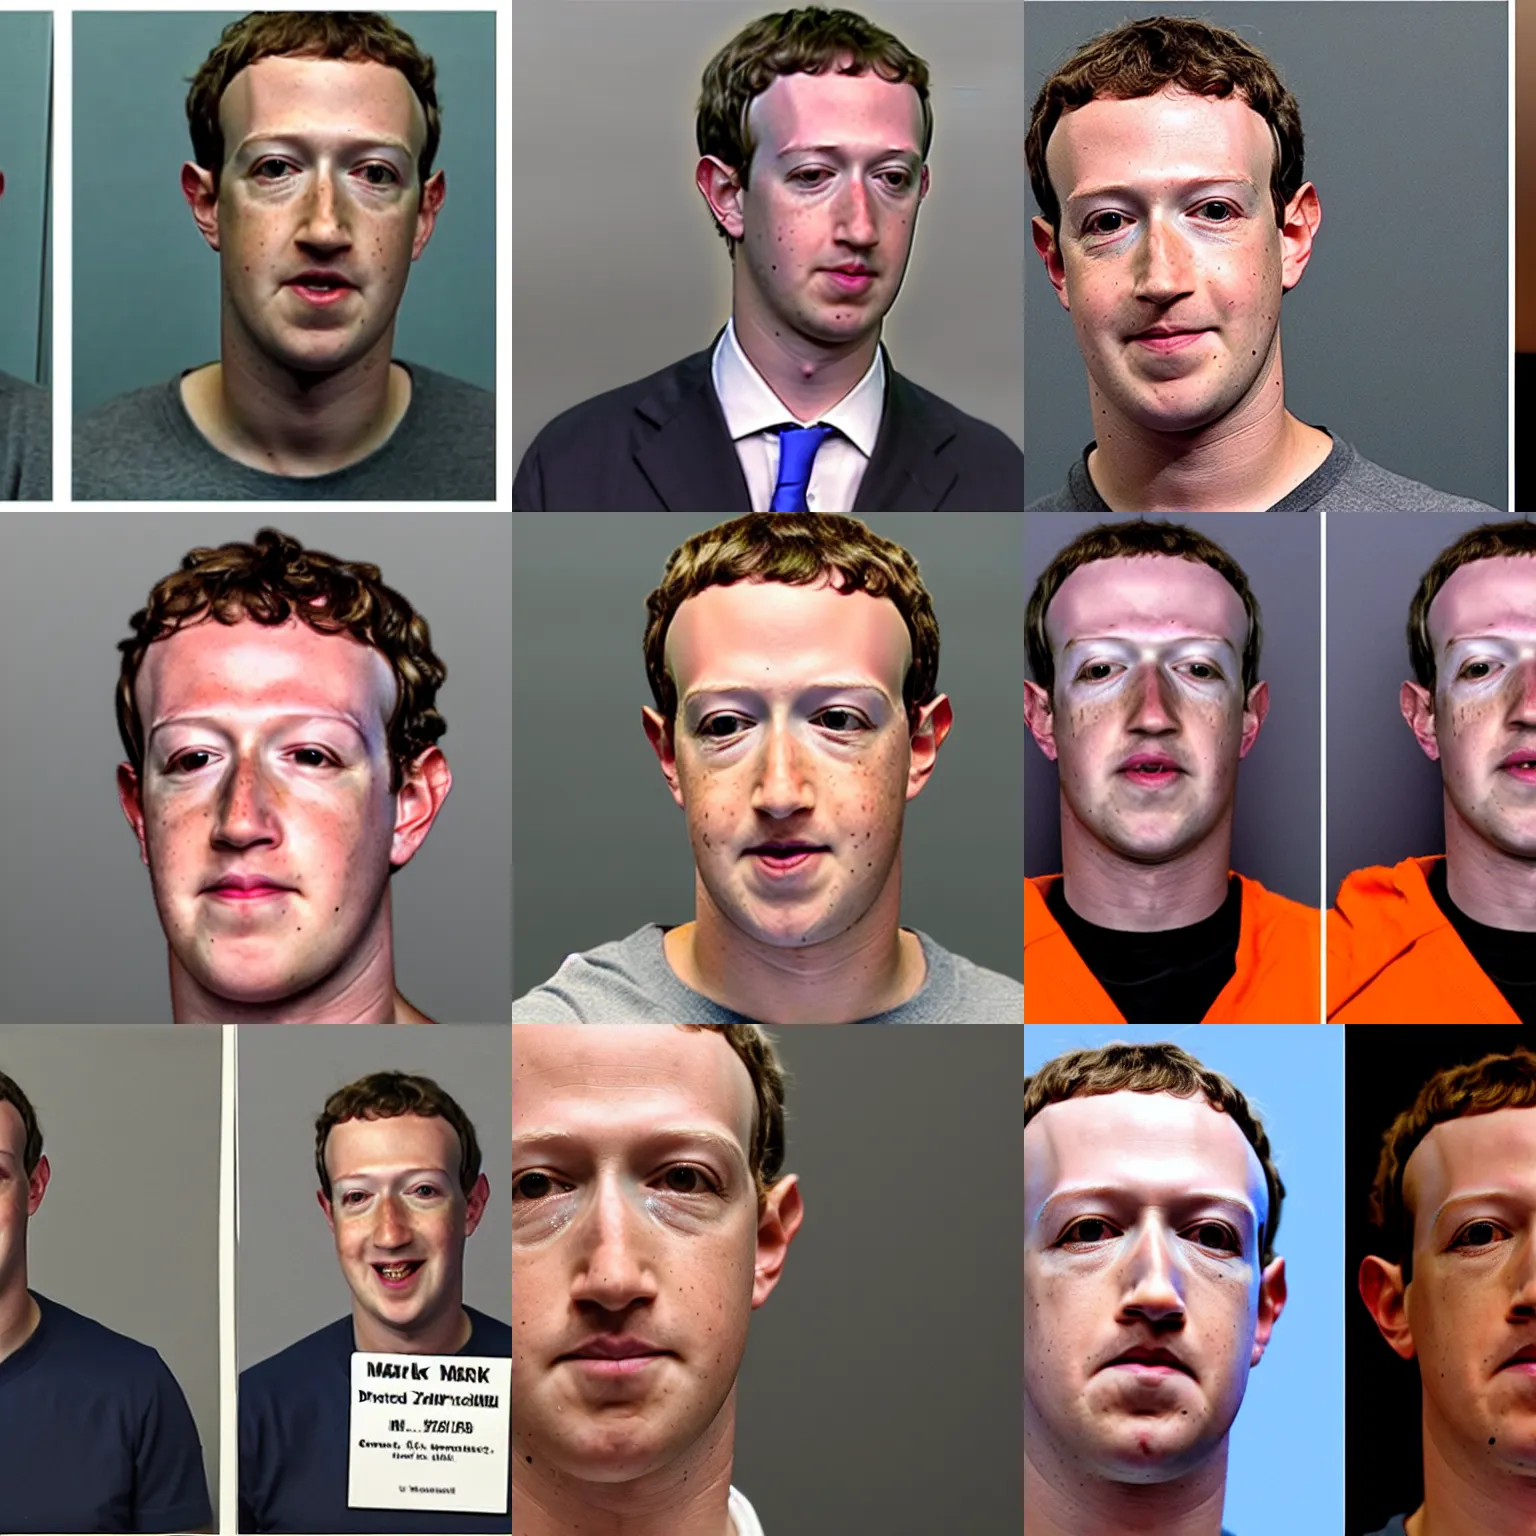 Prompt: Mark Zuckerberg cries in mugshot, wearing orange jumpsuit